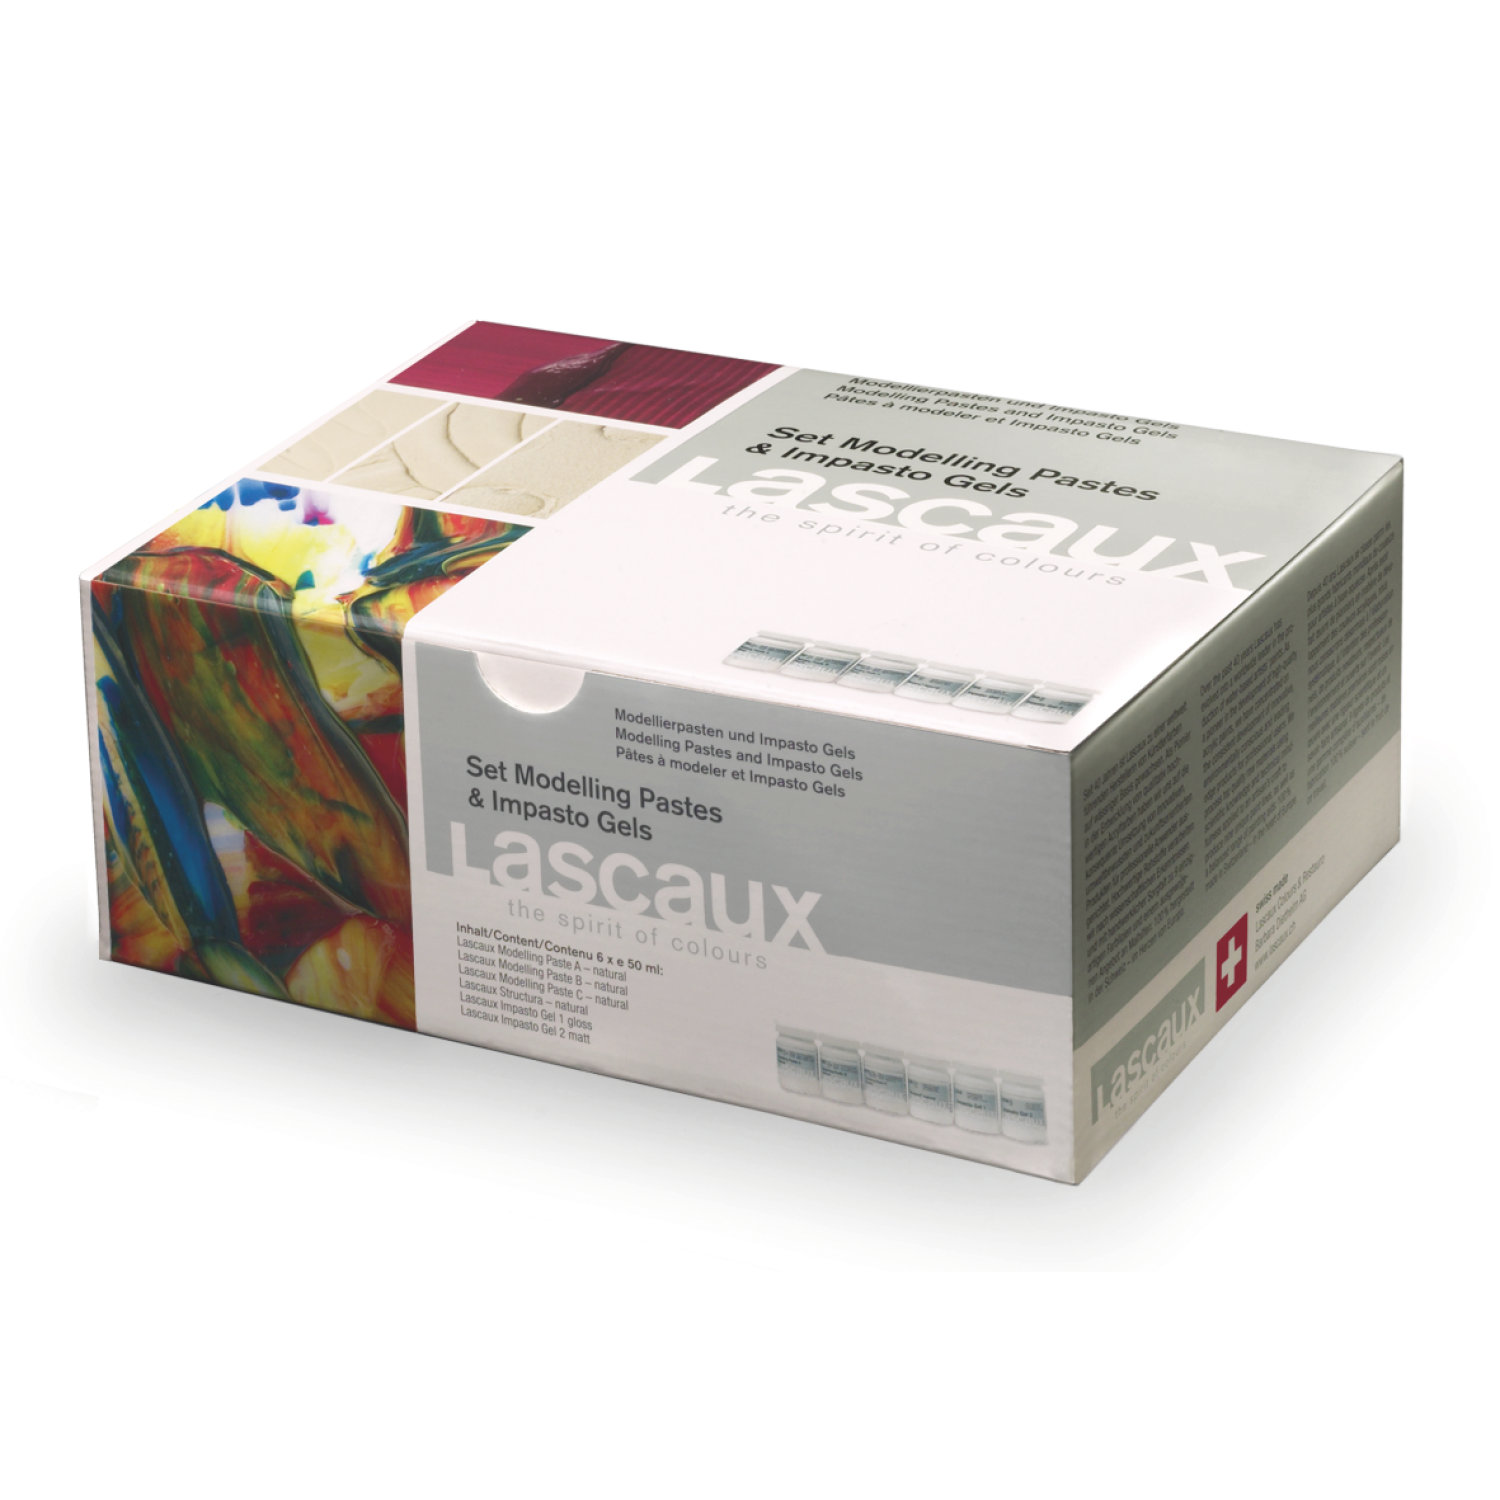 Lascaux Modelling Pastes and Impasto Gels Set 6 x 50ml